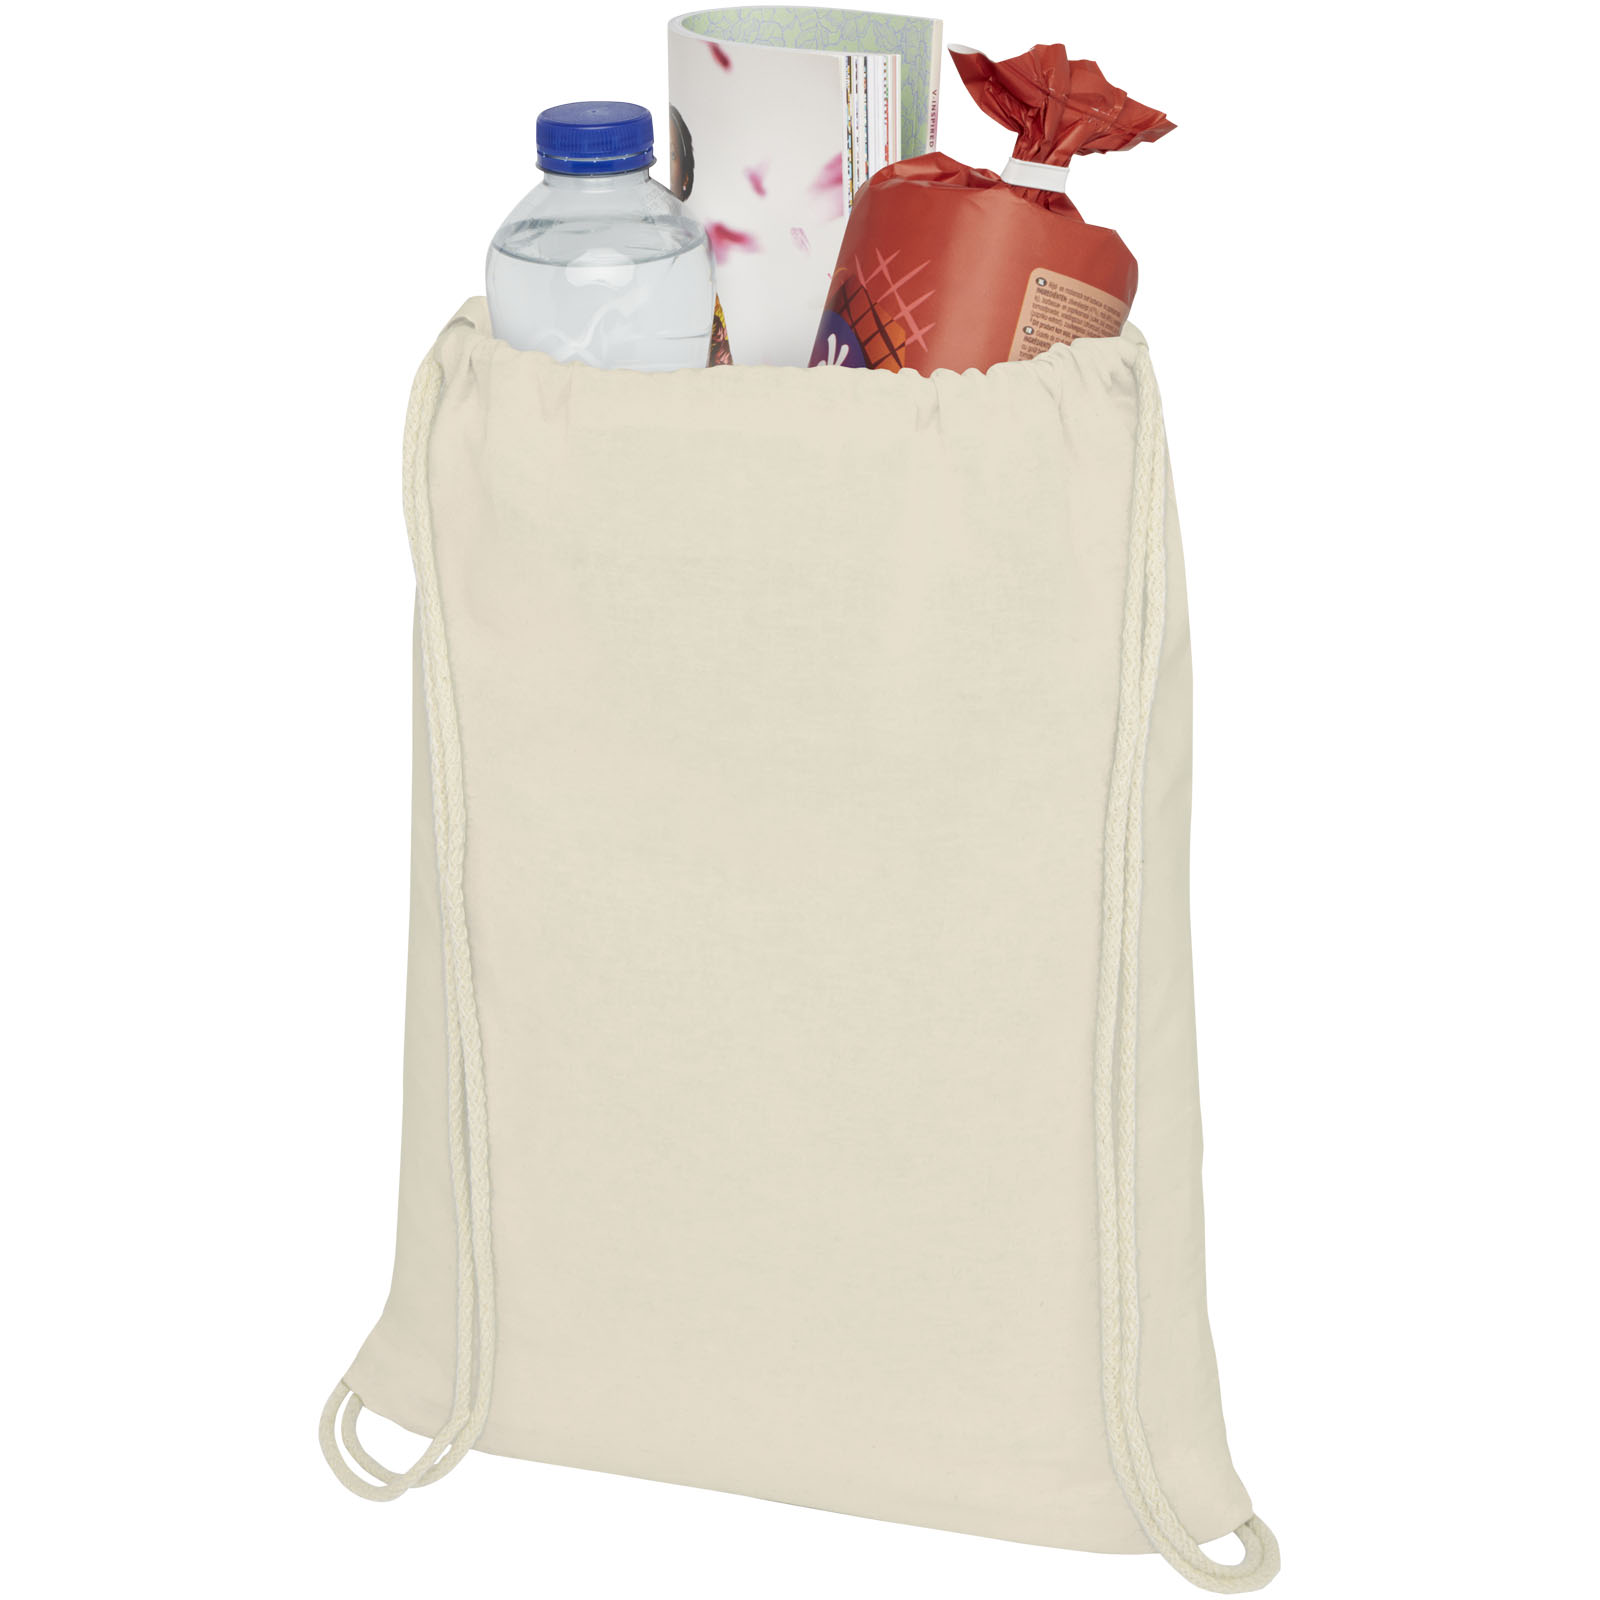 Advertising Drawstring Bags - Oregon 100 g/m² cotton drawstring bag 5L - 2